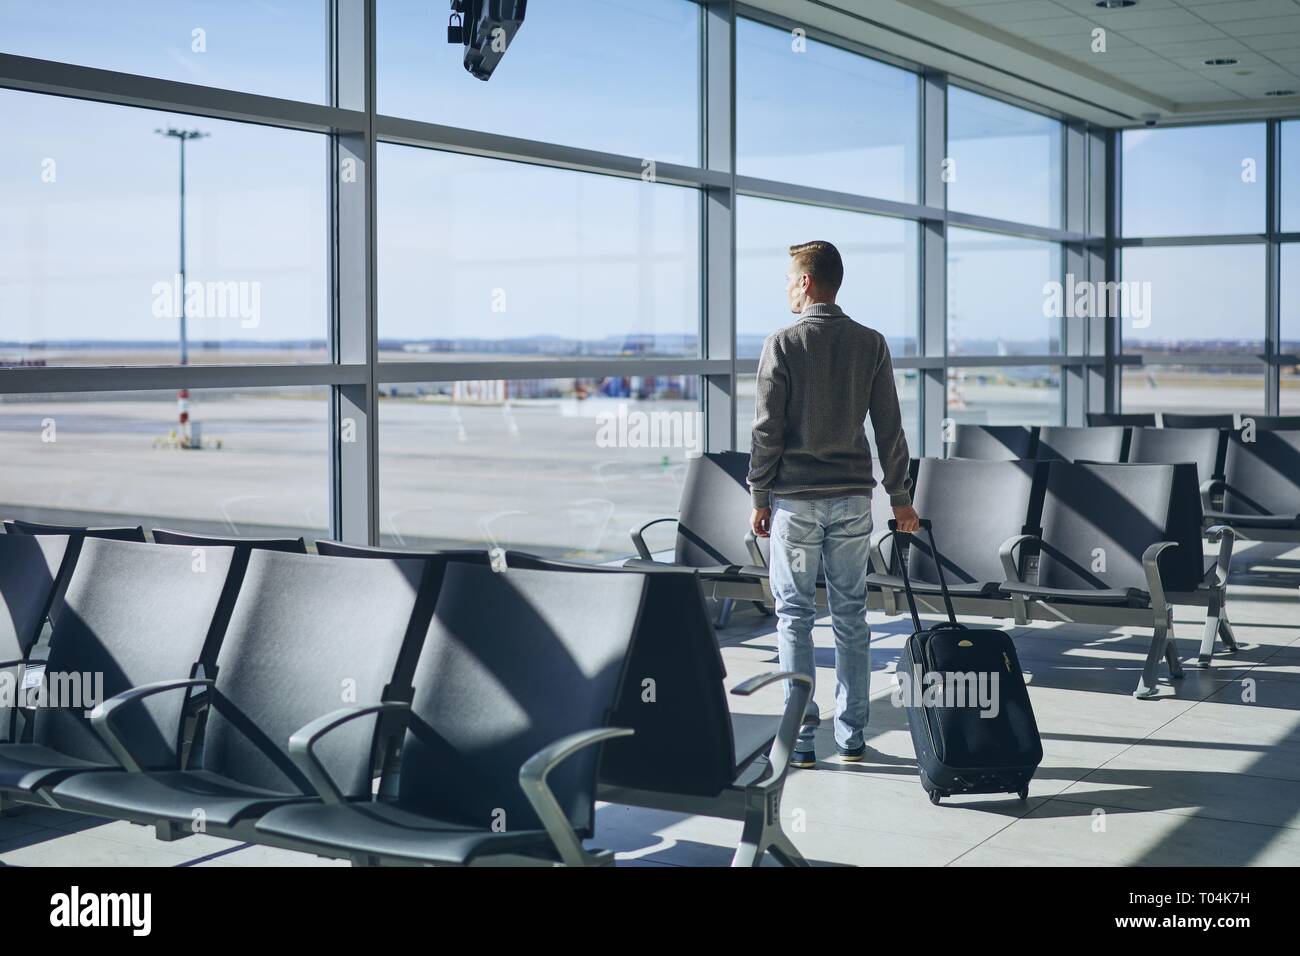 Reisende im Flughafen Terminal. Junger Mann mit Gepäck warten auf Flugzeug. Stockfoto